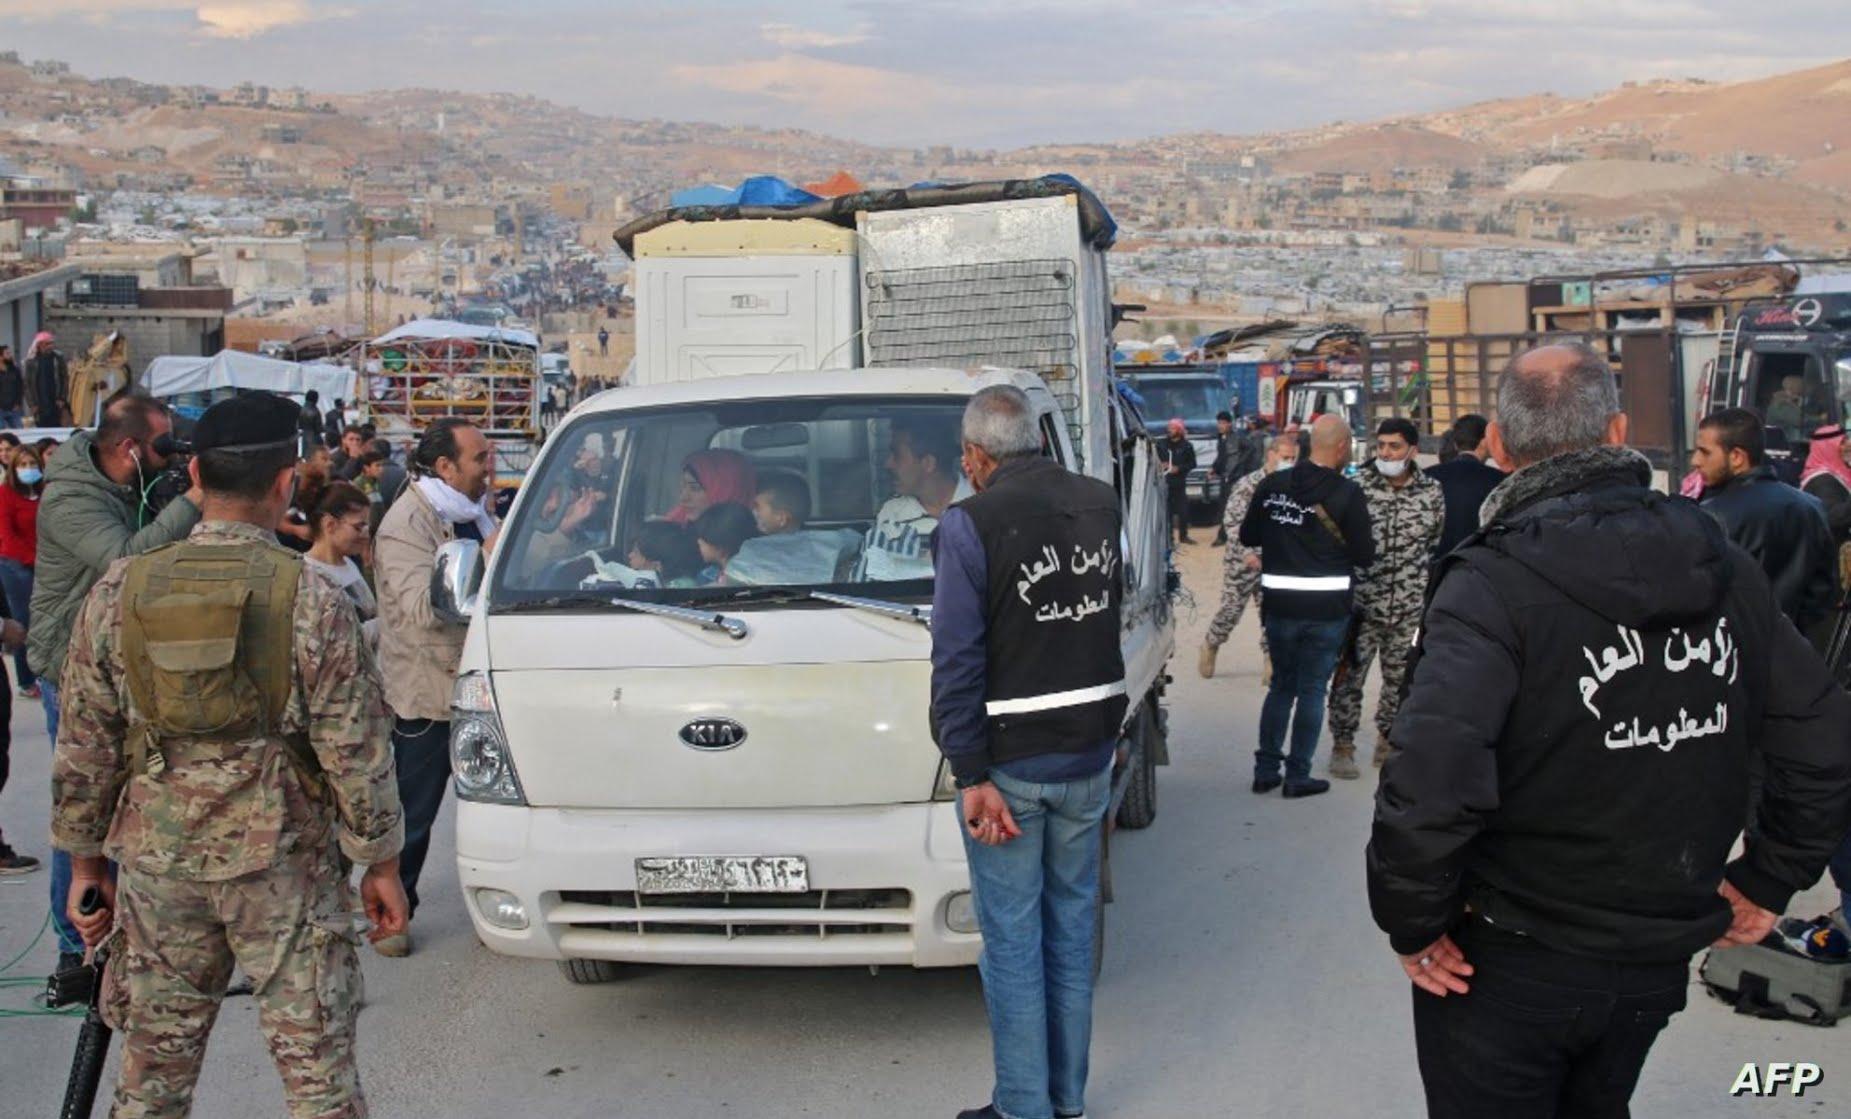 لبنان يرفض ربط ملف اللجوء بالحل السياسي في سورية